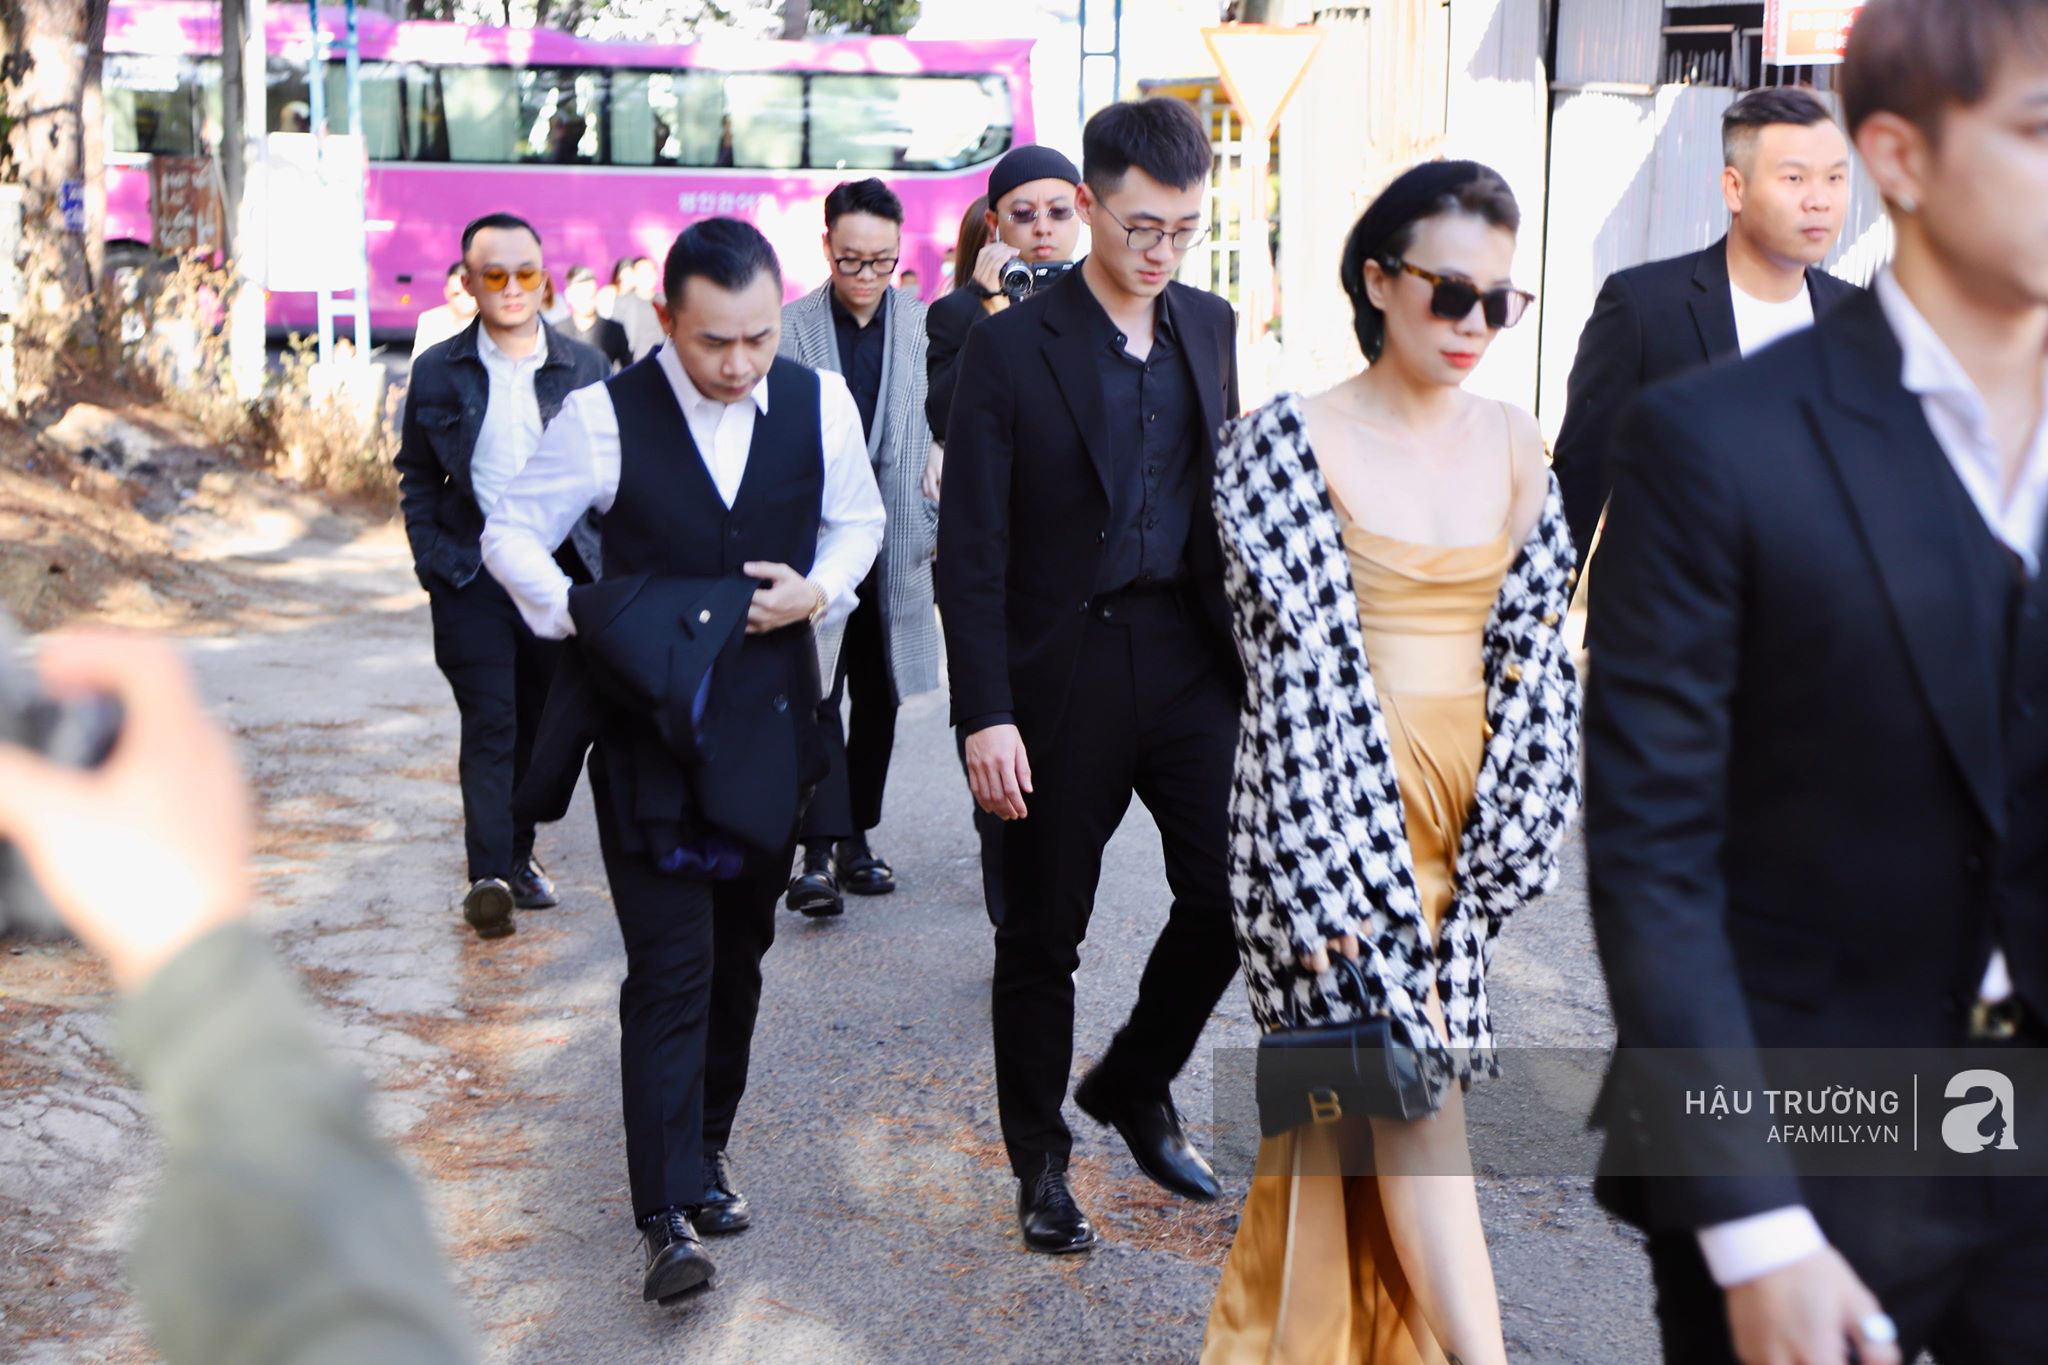 Tiệc cưới chính thức của Tóc Tiên và Hoàng Touliver: Kelbin, Tiên Tiên cùng nhiều nghệ sĩ váy áo lộng lẫy bí mật xuất hiện - Ảnh 10.